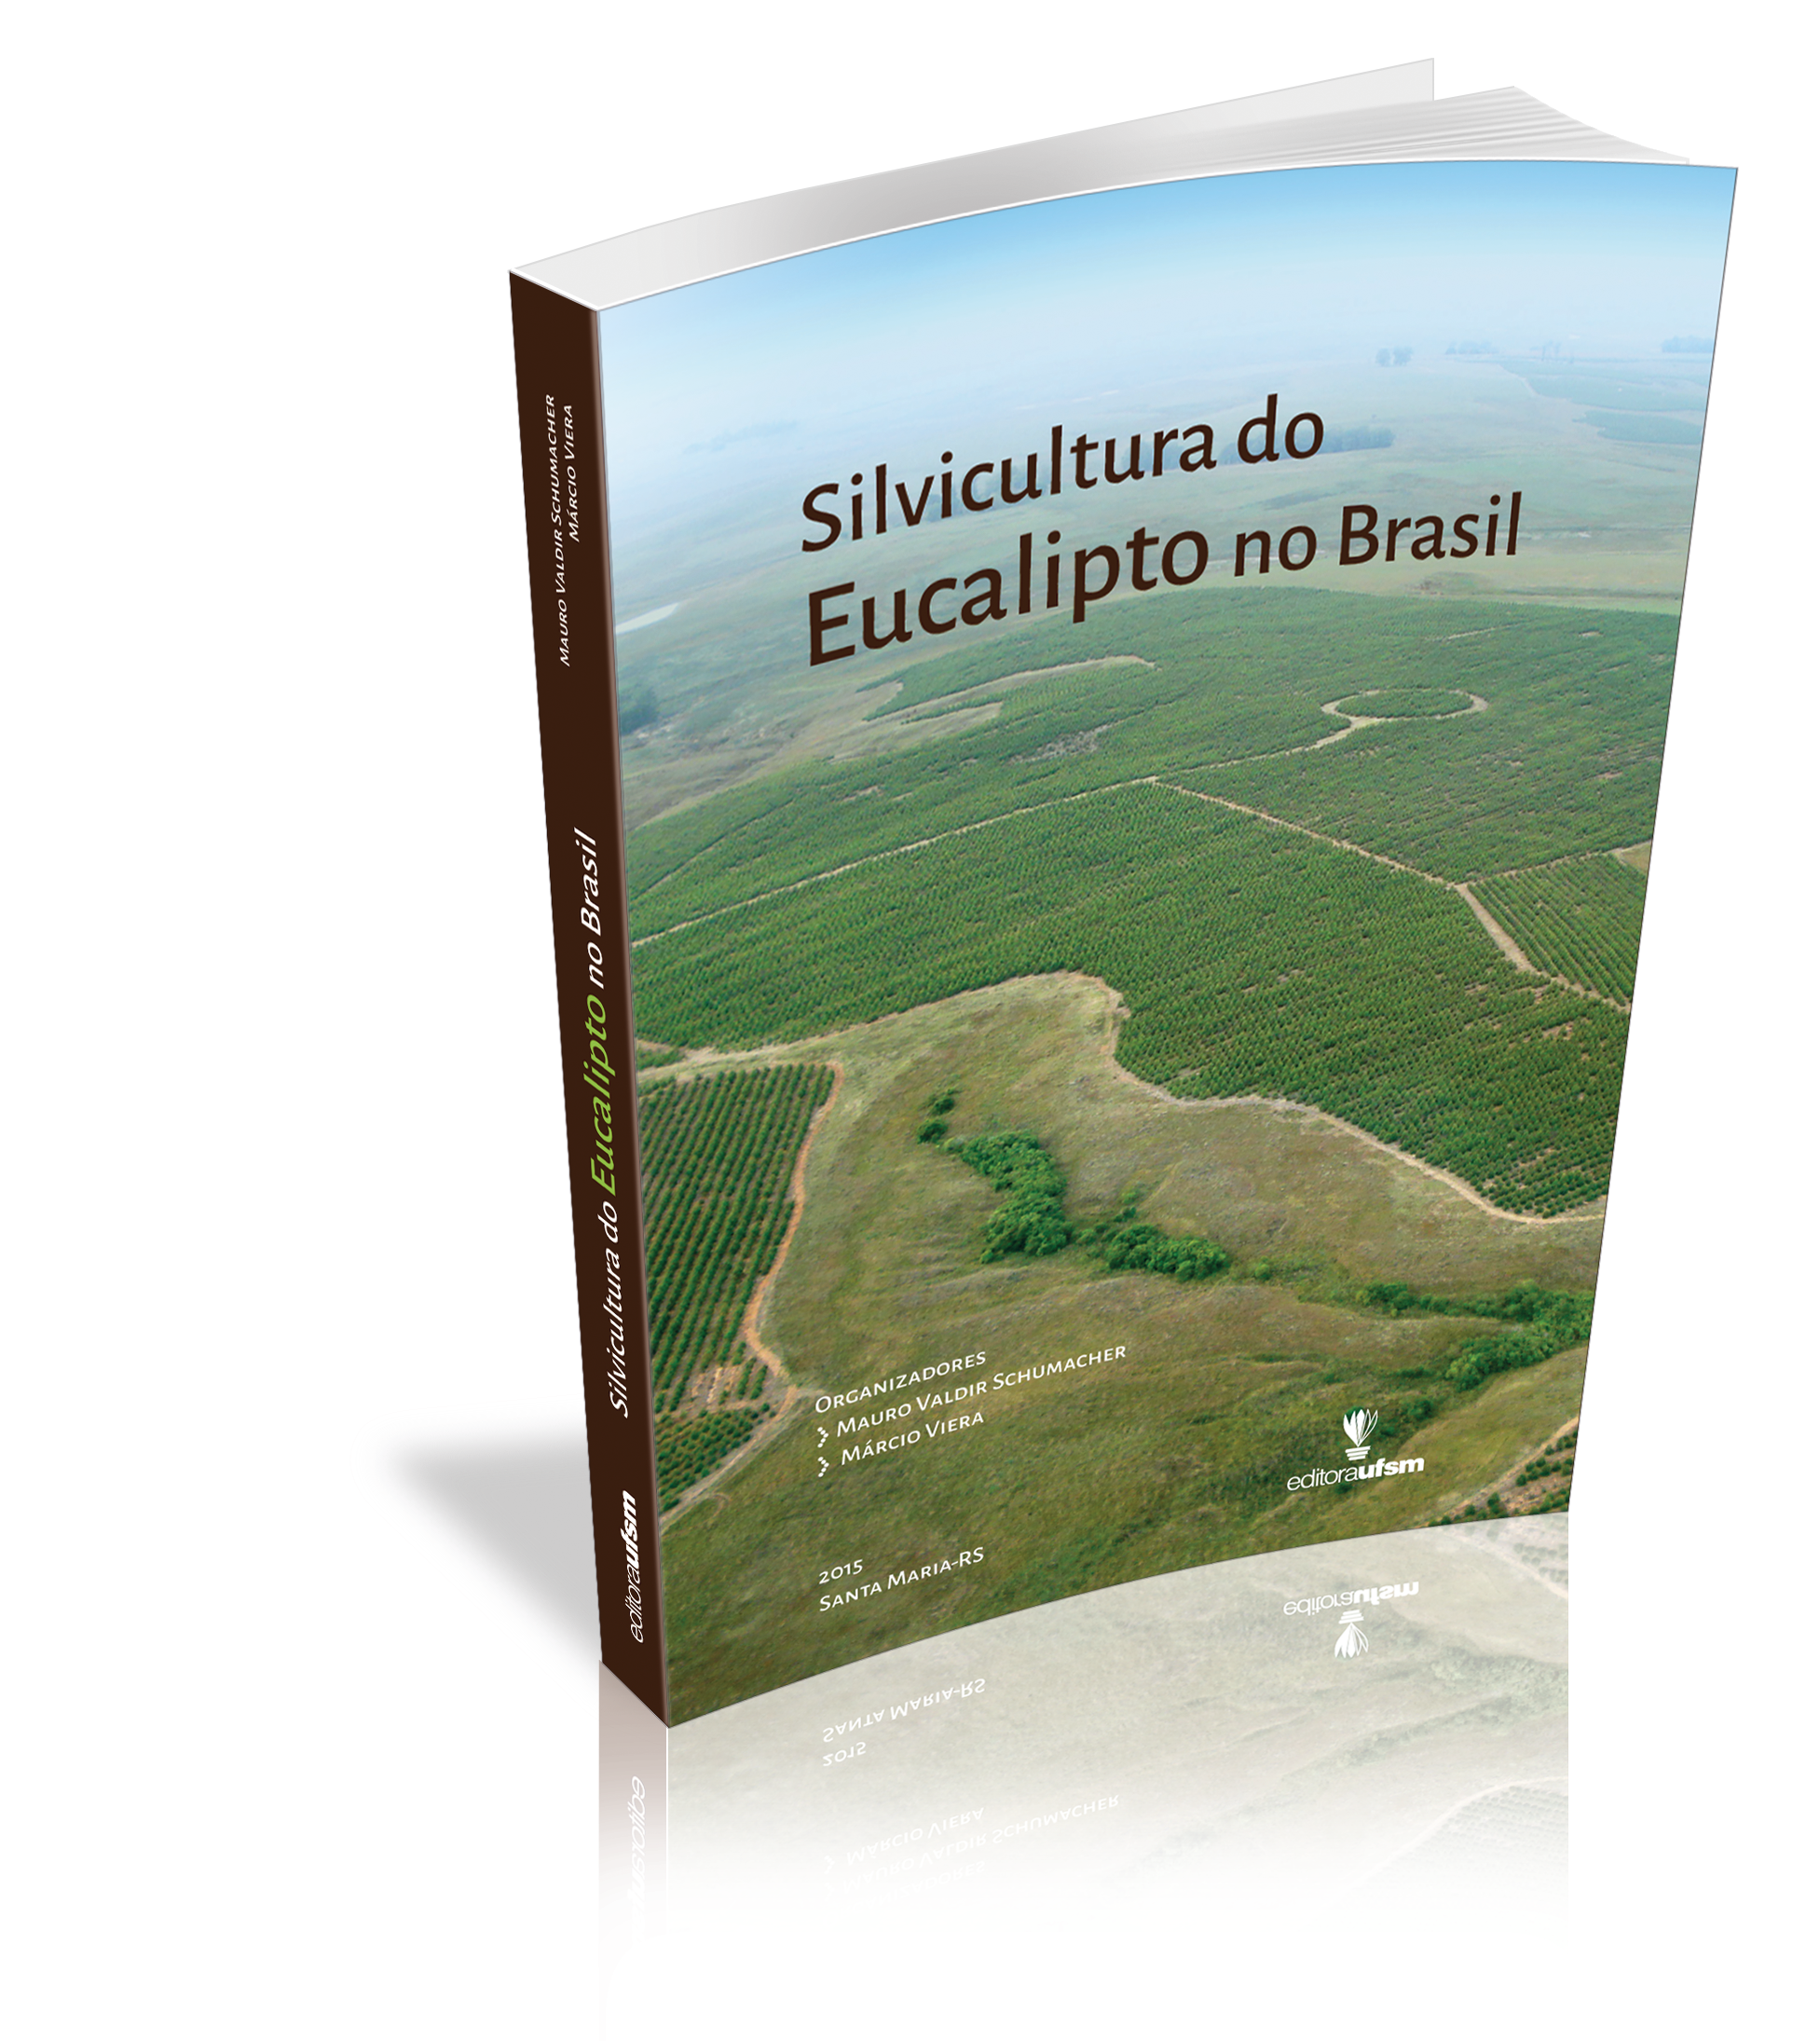 Capa do livro Silvicultura do Eucalipto no Brasil